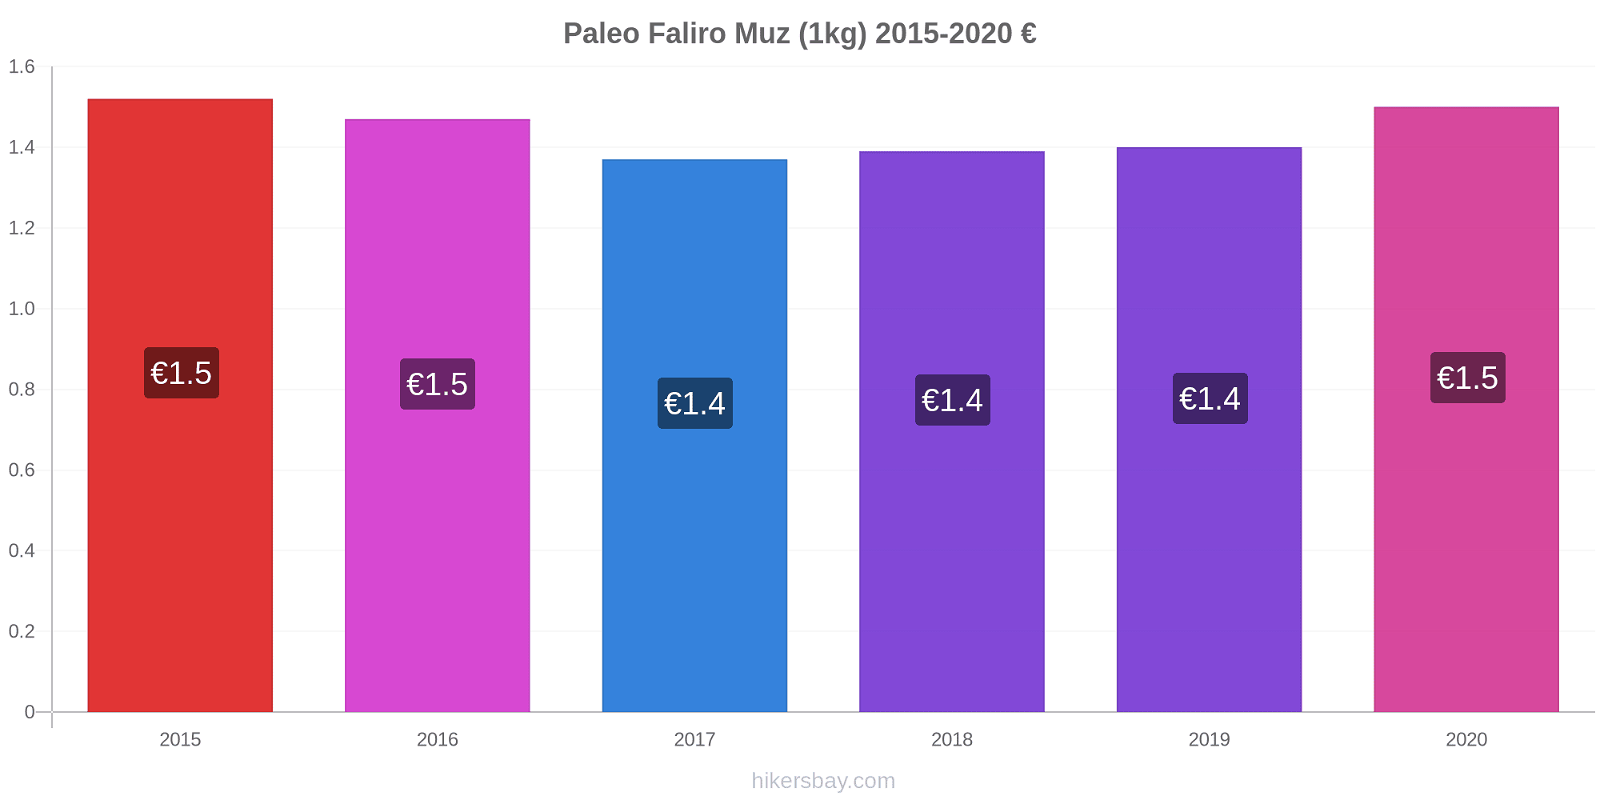 Paleo Faliro fiyat değişiklikleri Muz (1kg) hikersbay.com